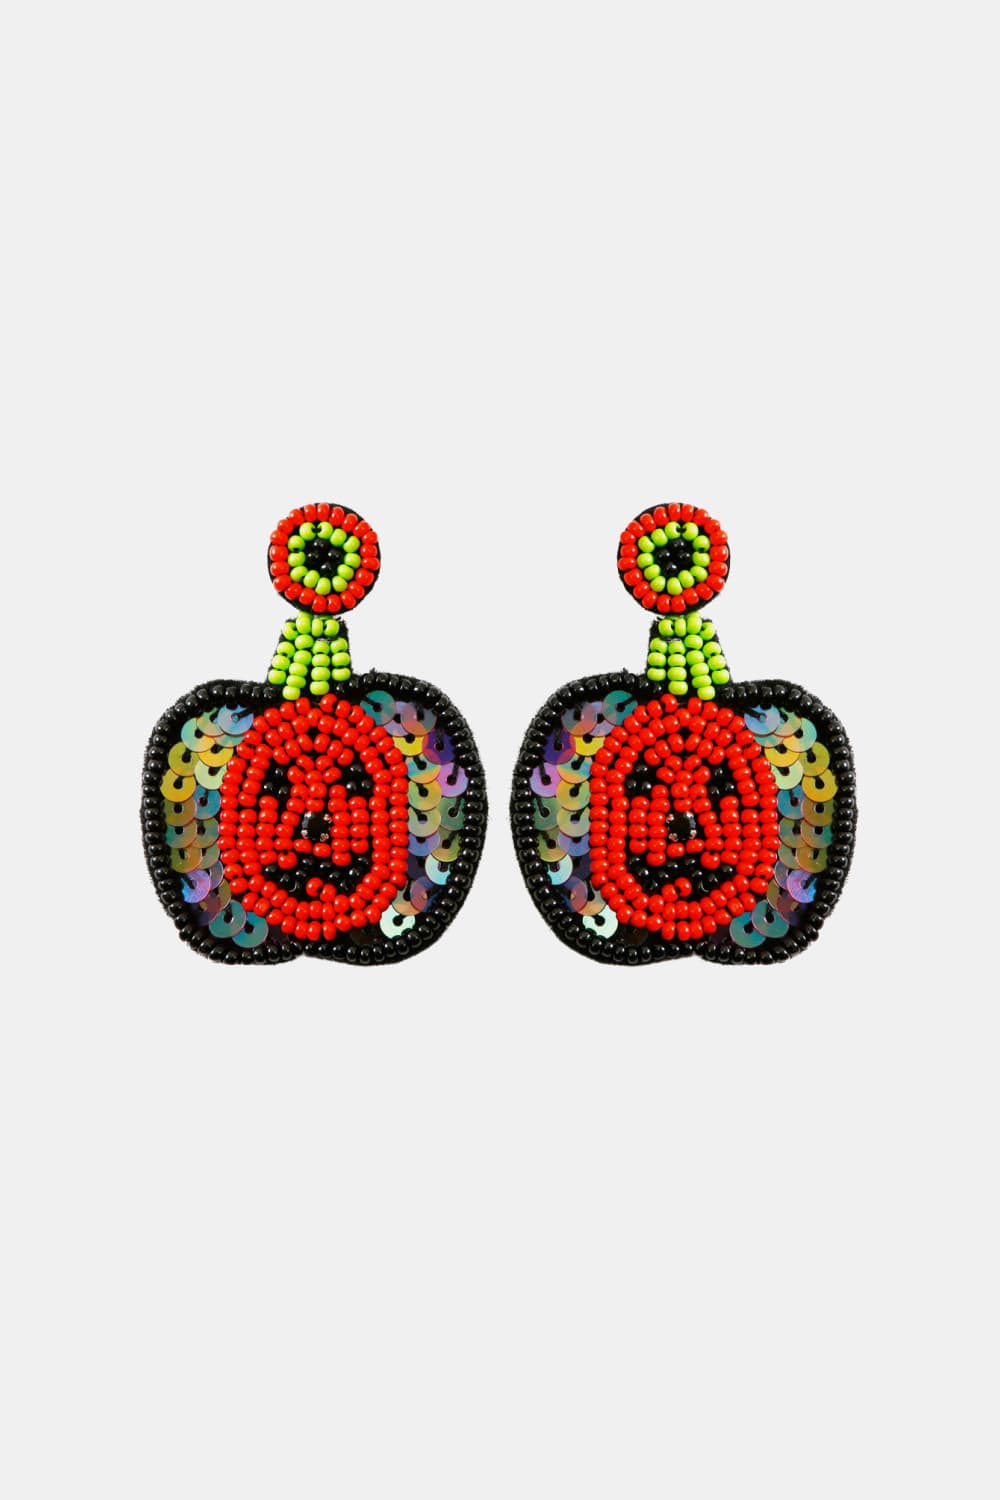 Pumpkin Shape Beaded Dangle Earrings - Red / One Size - Women’s Jewelry - Earrings - 4 - 2024